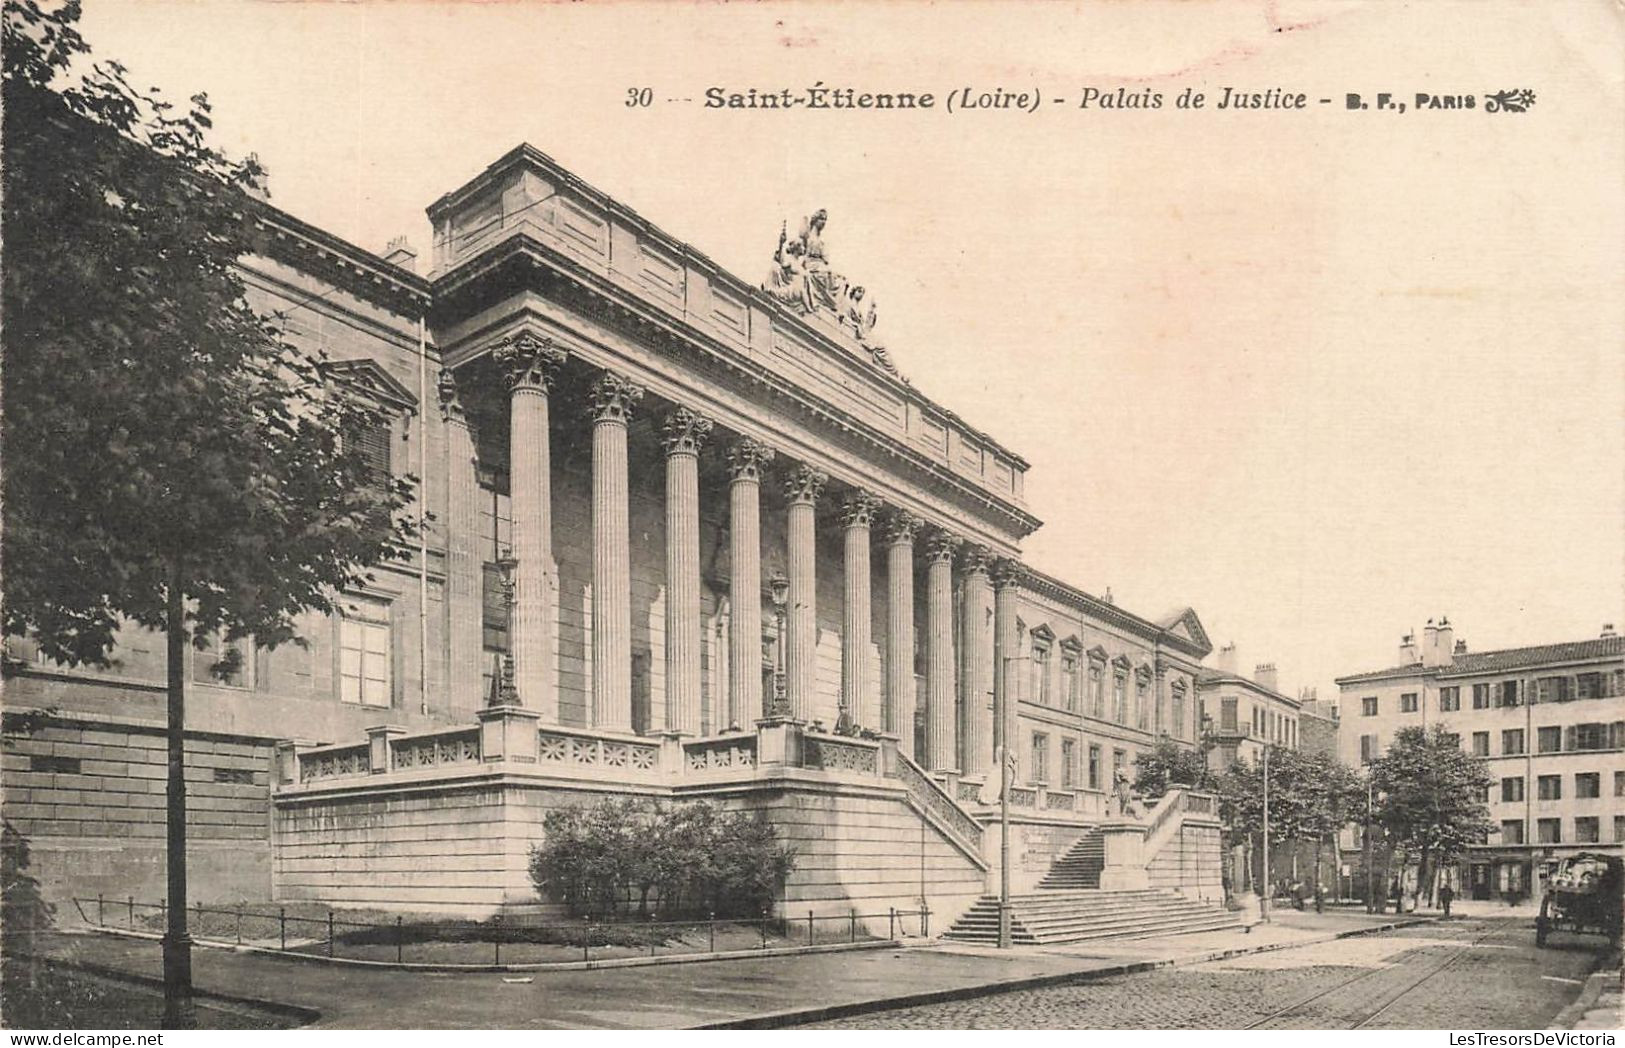 FRANCE - Saint Etienne (Loire) - Vue Panoramique De L'entrée Du Palais De Justice - B F Paris - Carte Postale Ancienne - Saint Etienne